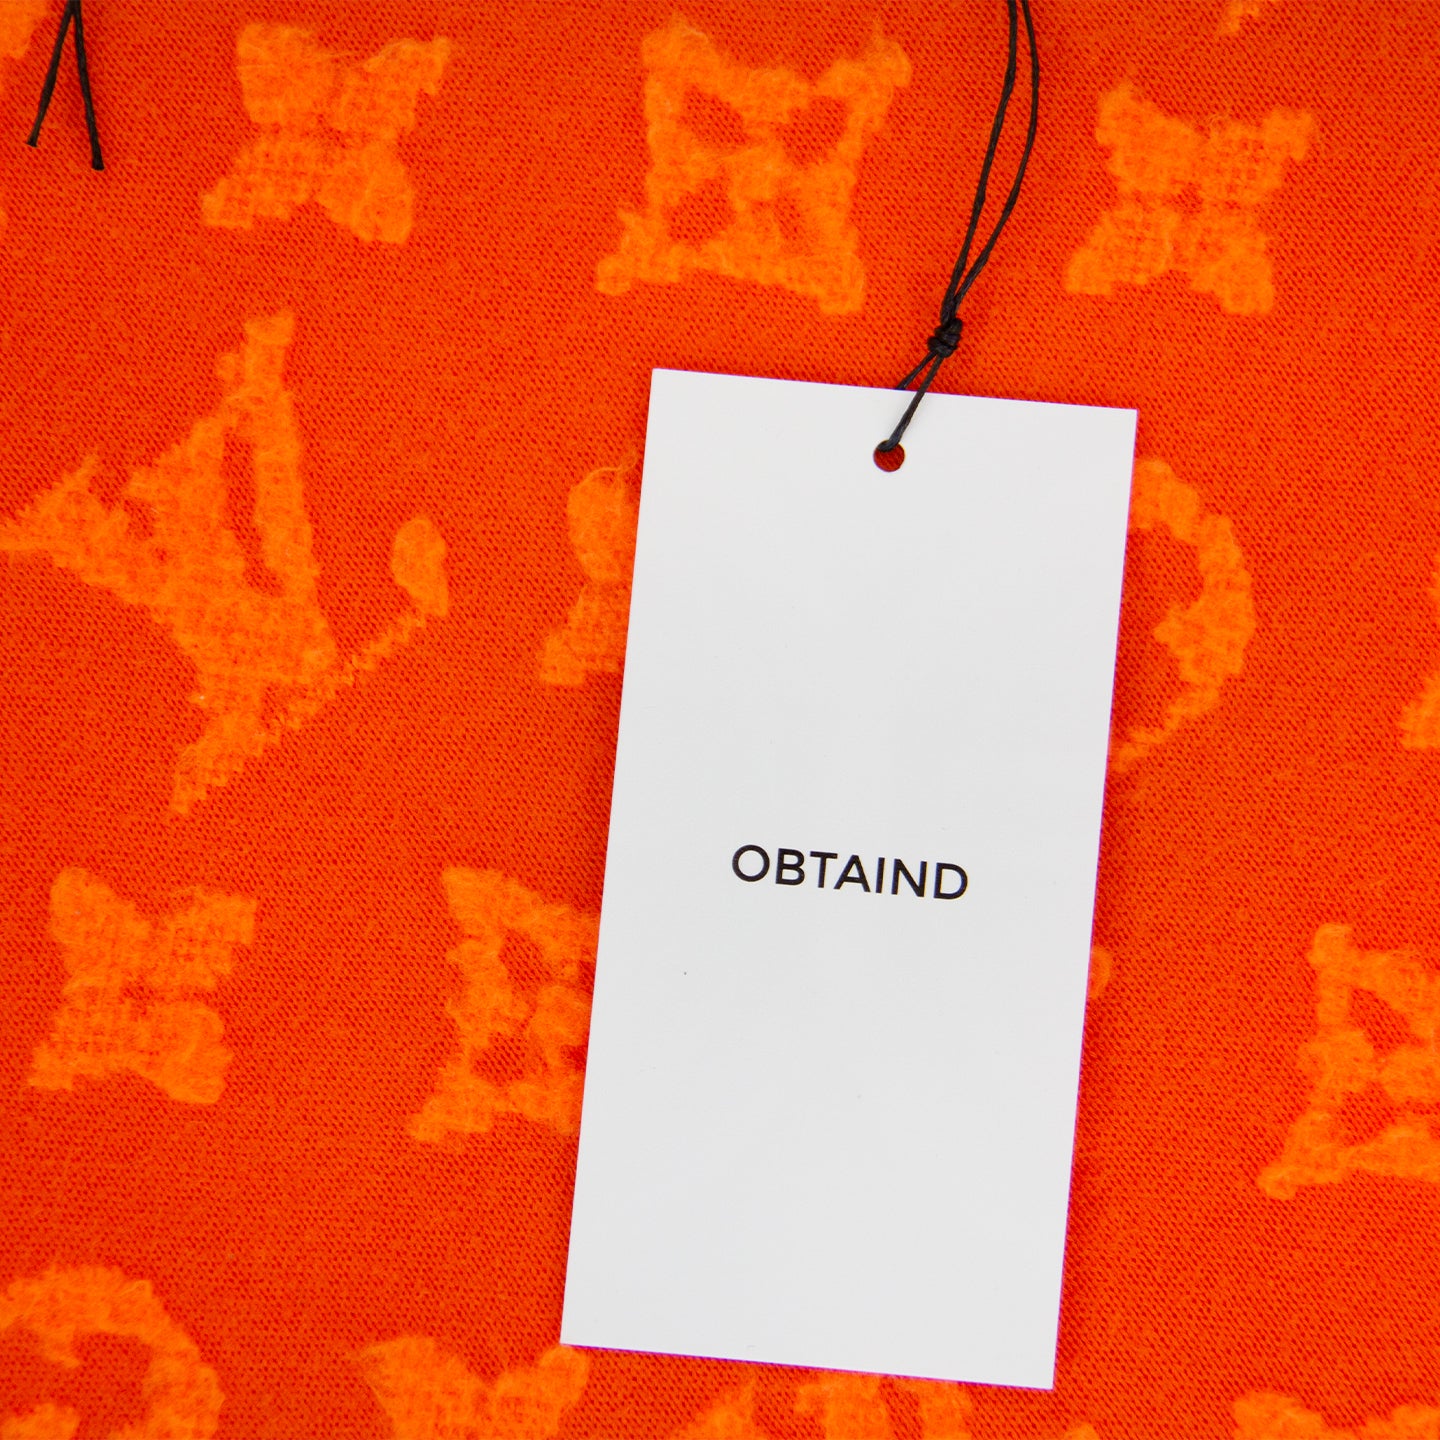 vuitton orange monogram sweater